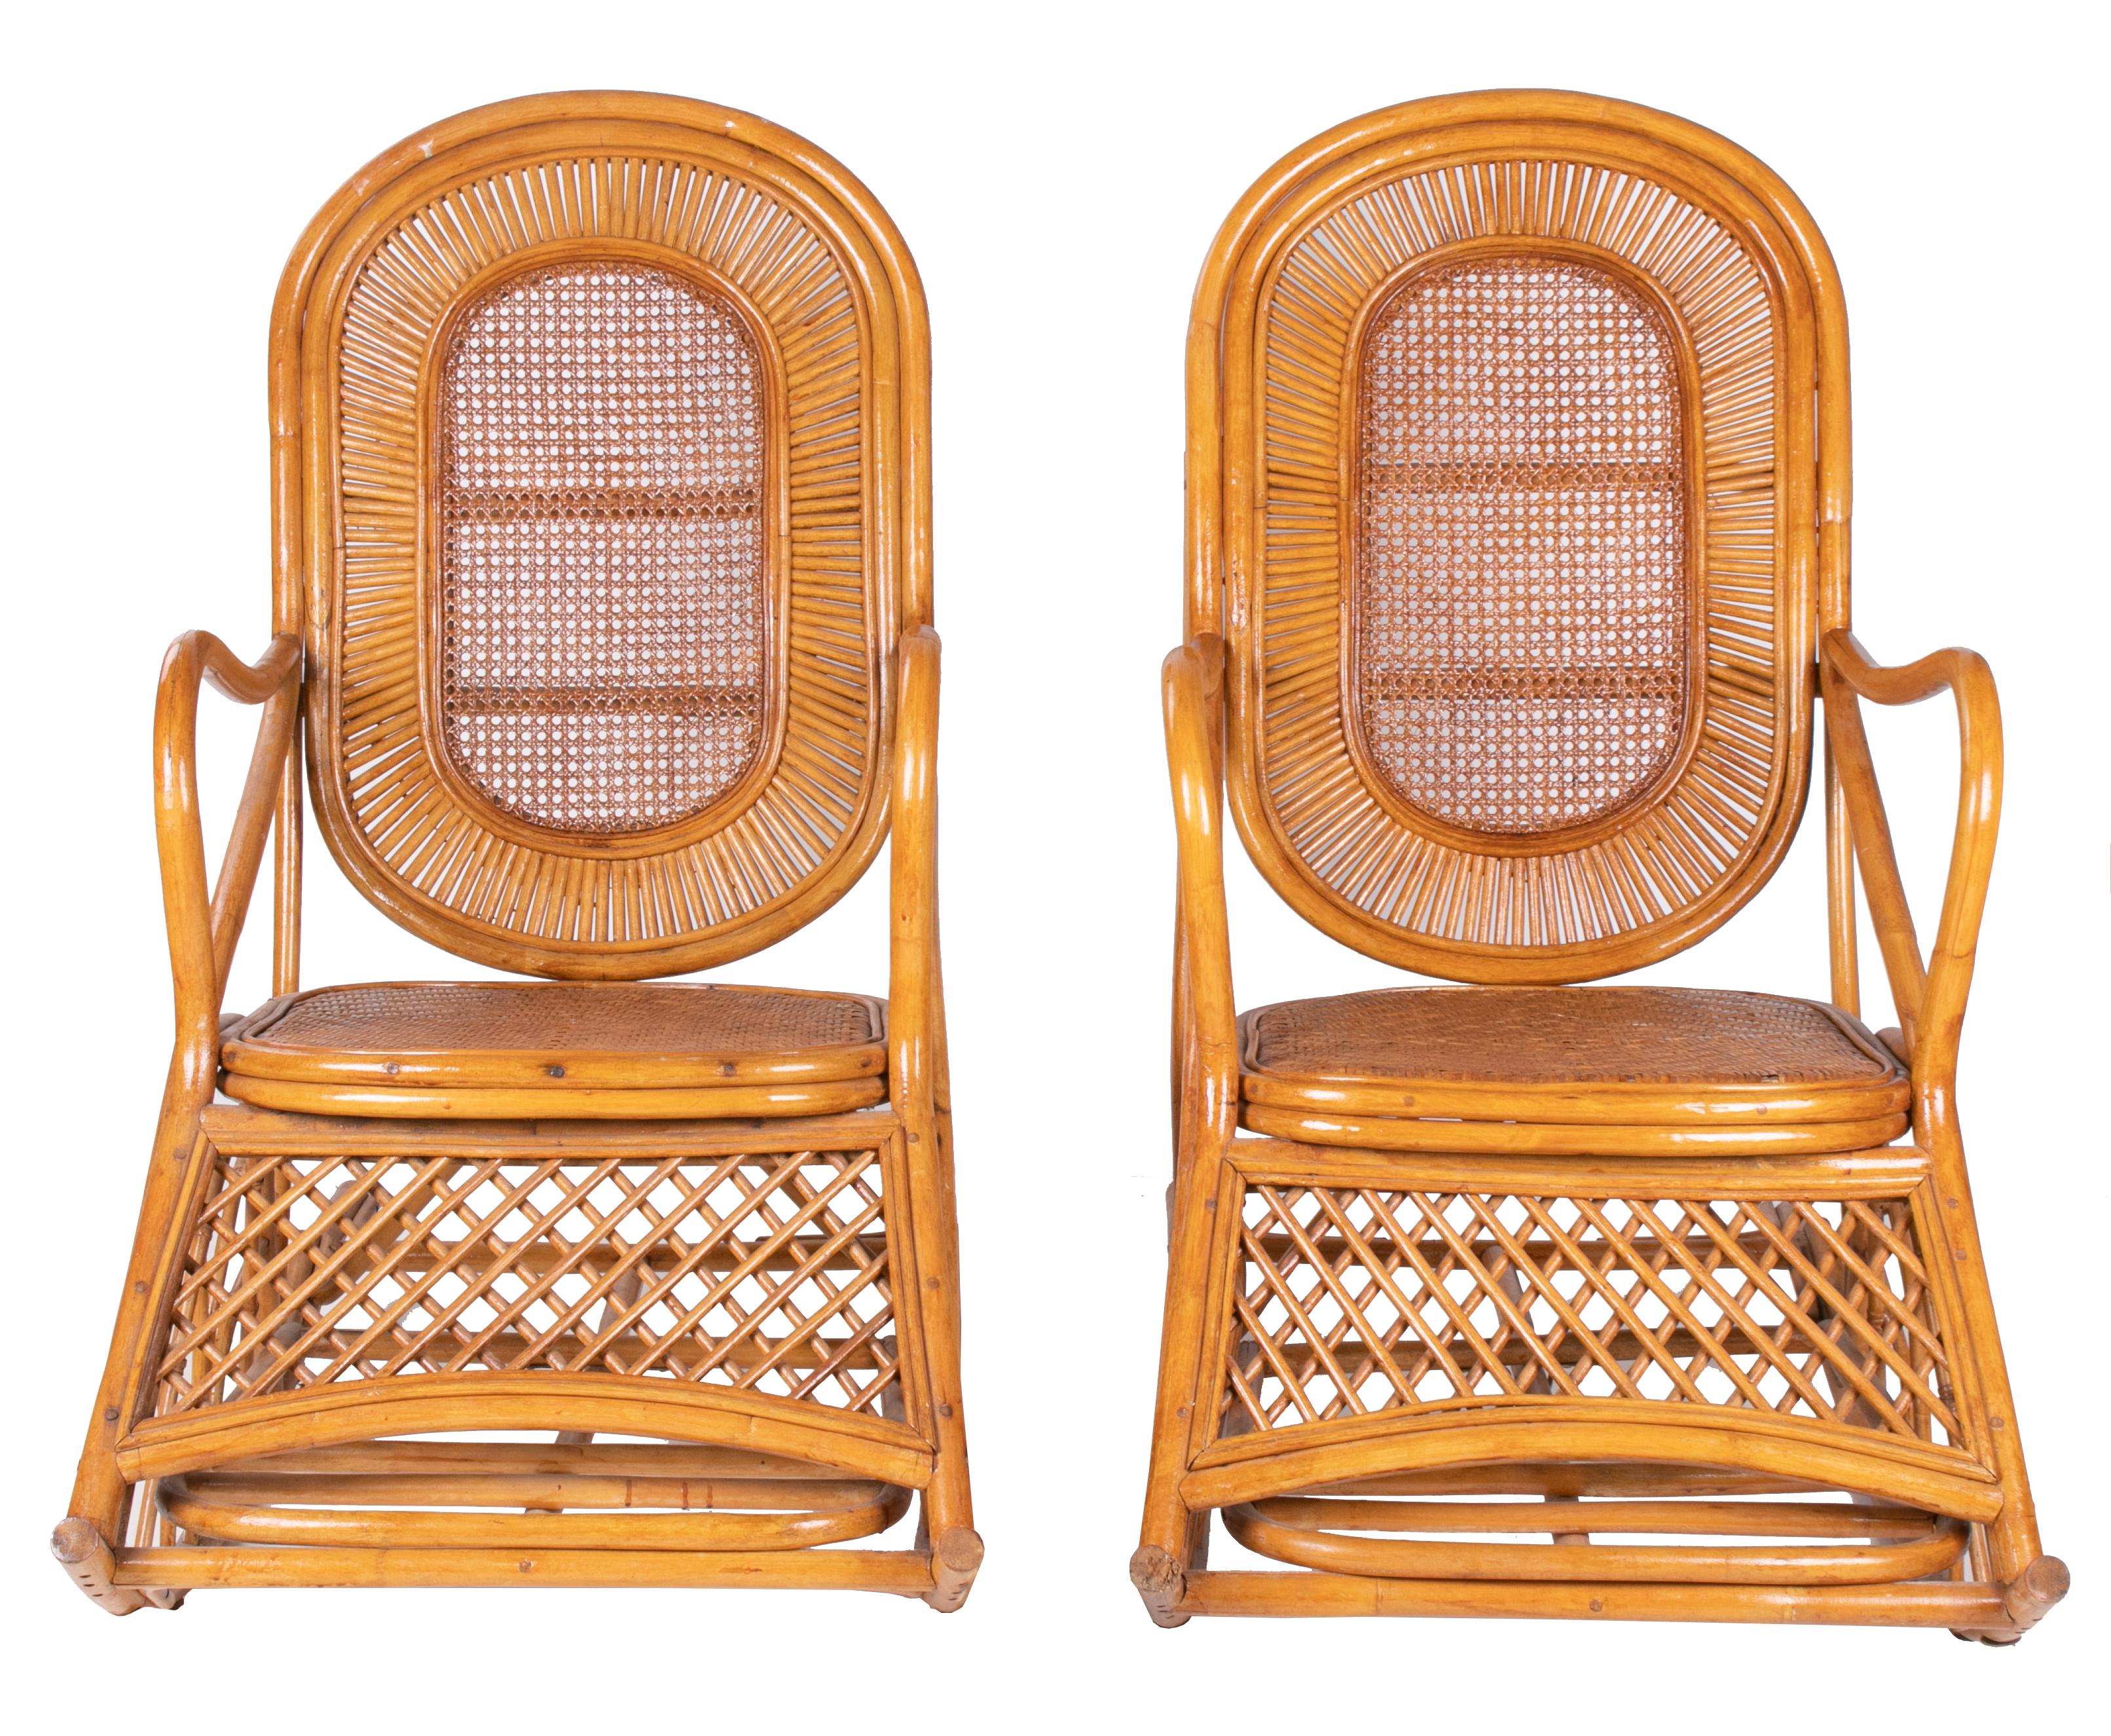 Paire de fauteuils à bascule espagnols en bois et bambou avec repose-pieds, datant des années 1970.